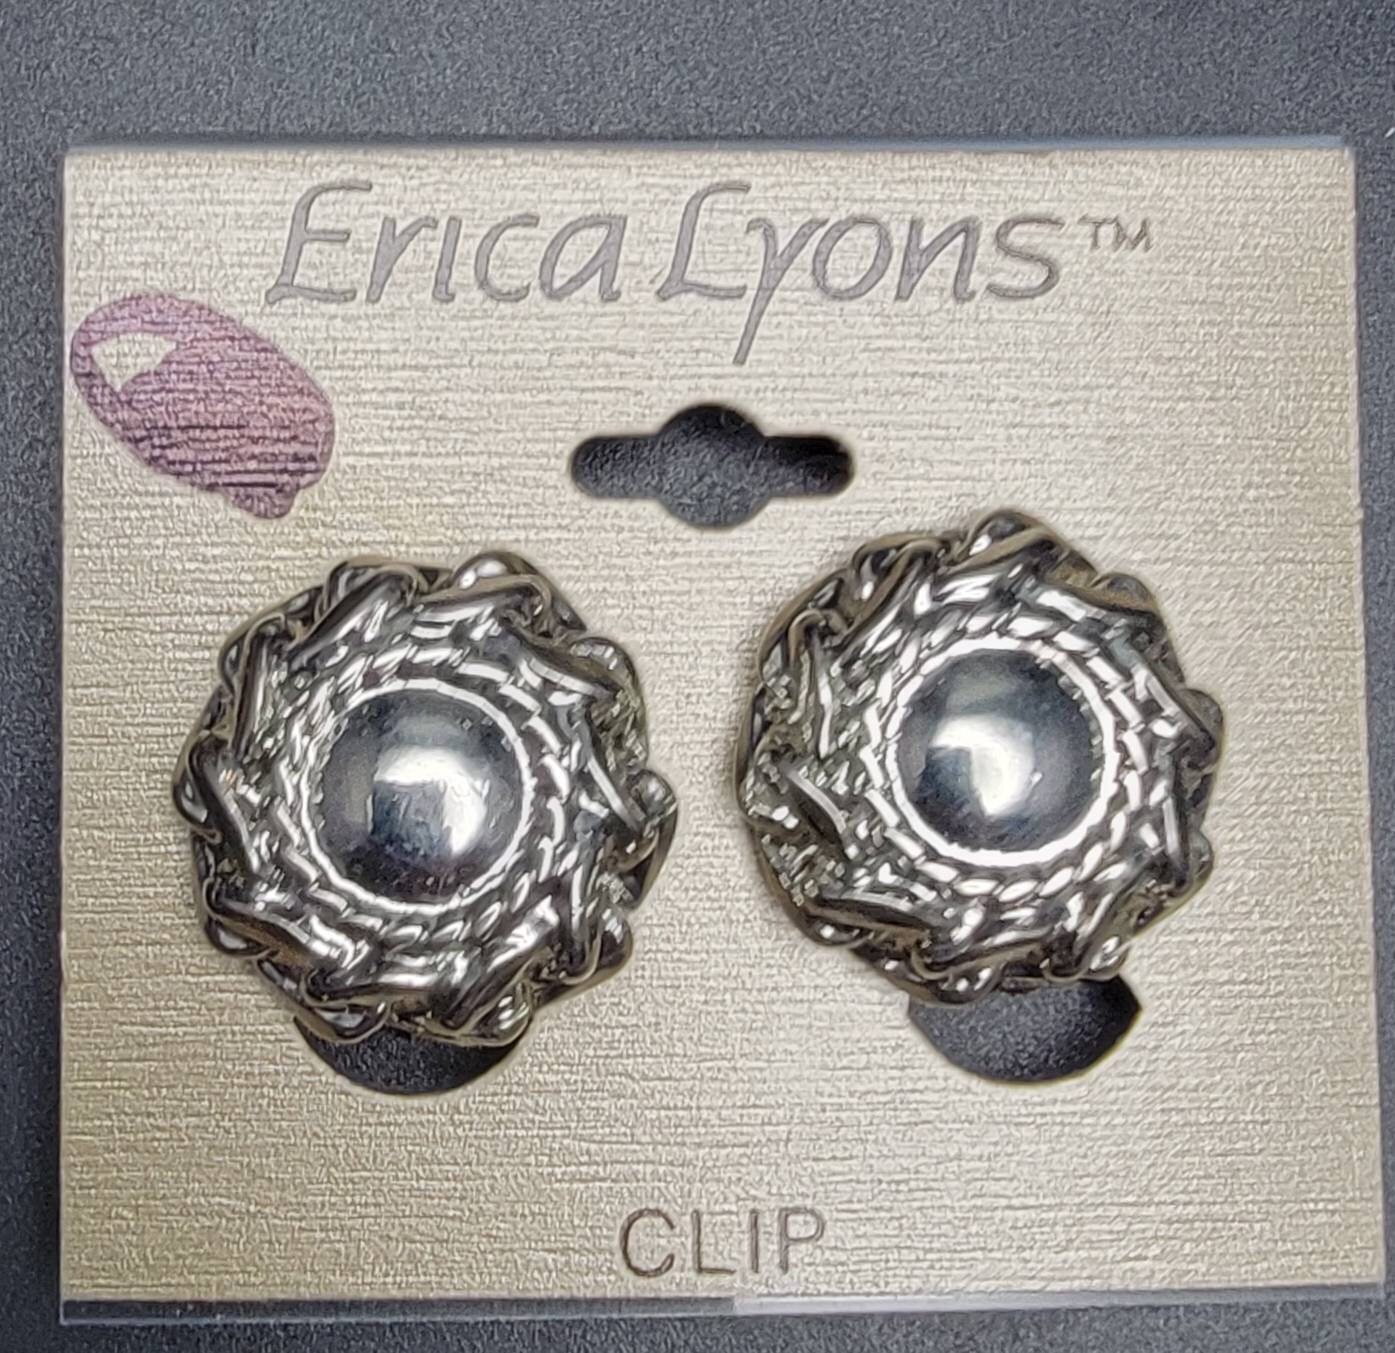 Erica Lyons Jewelry - Etsy